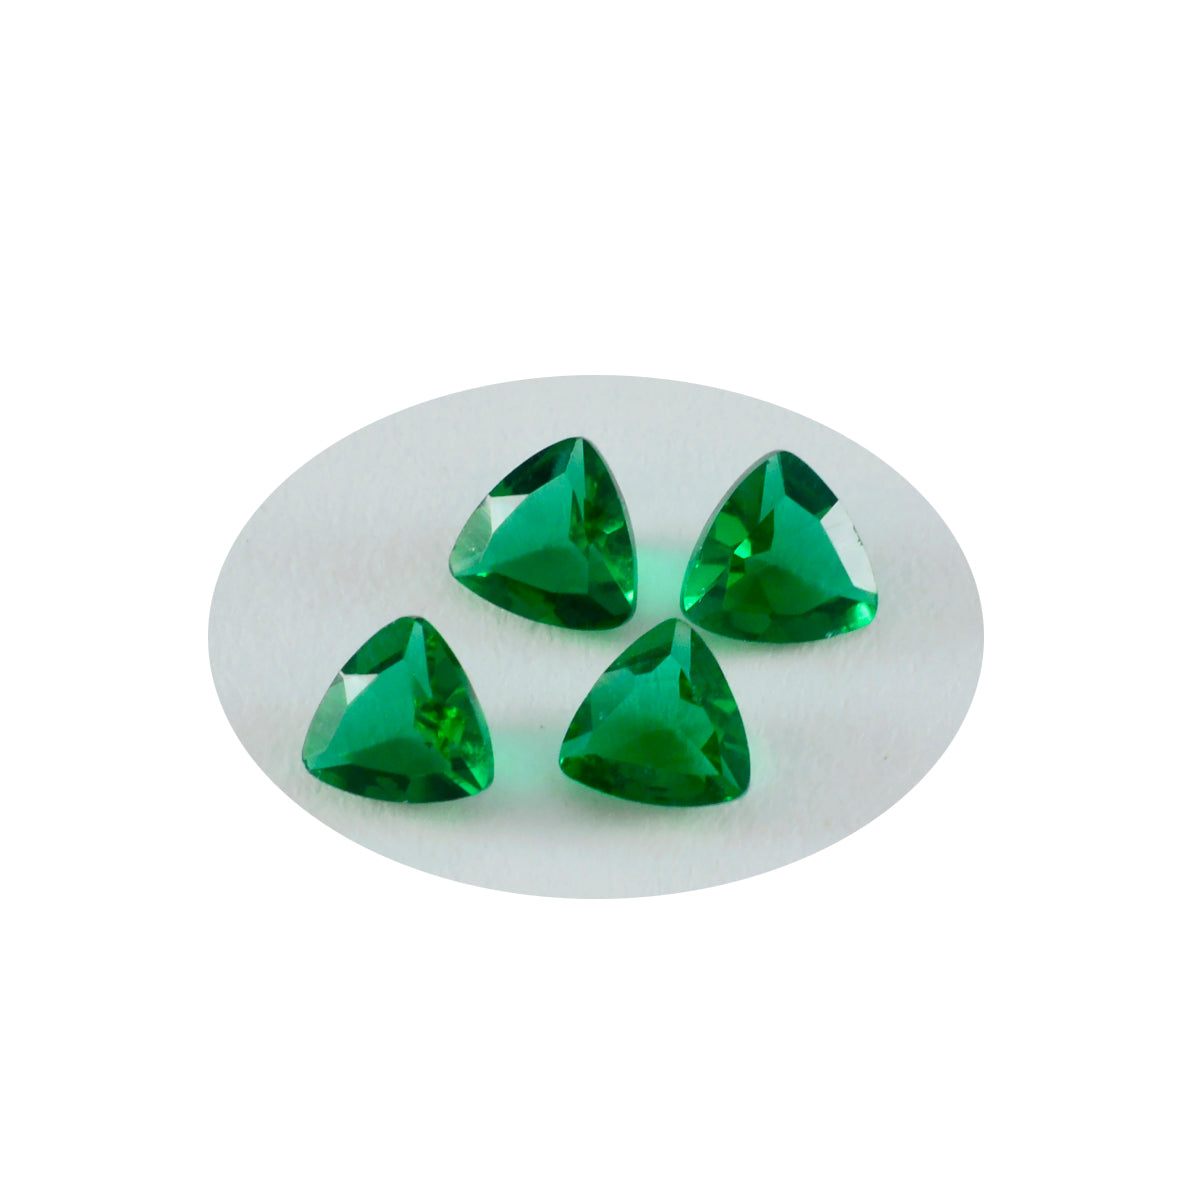 riyogems 1 шт., зеленый изумруд, граненые камни 8x8 мм, форма триллиона, удивительное качество, свободные драгоценные камни